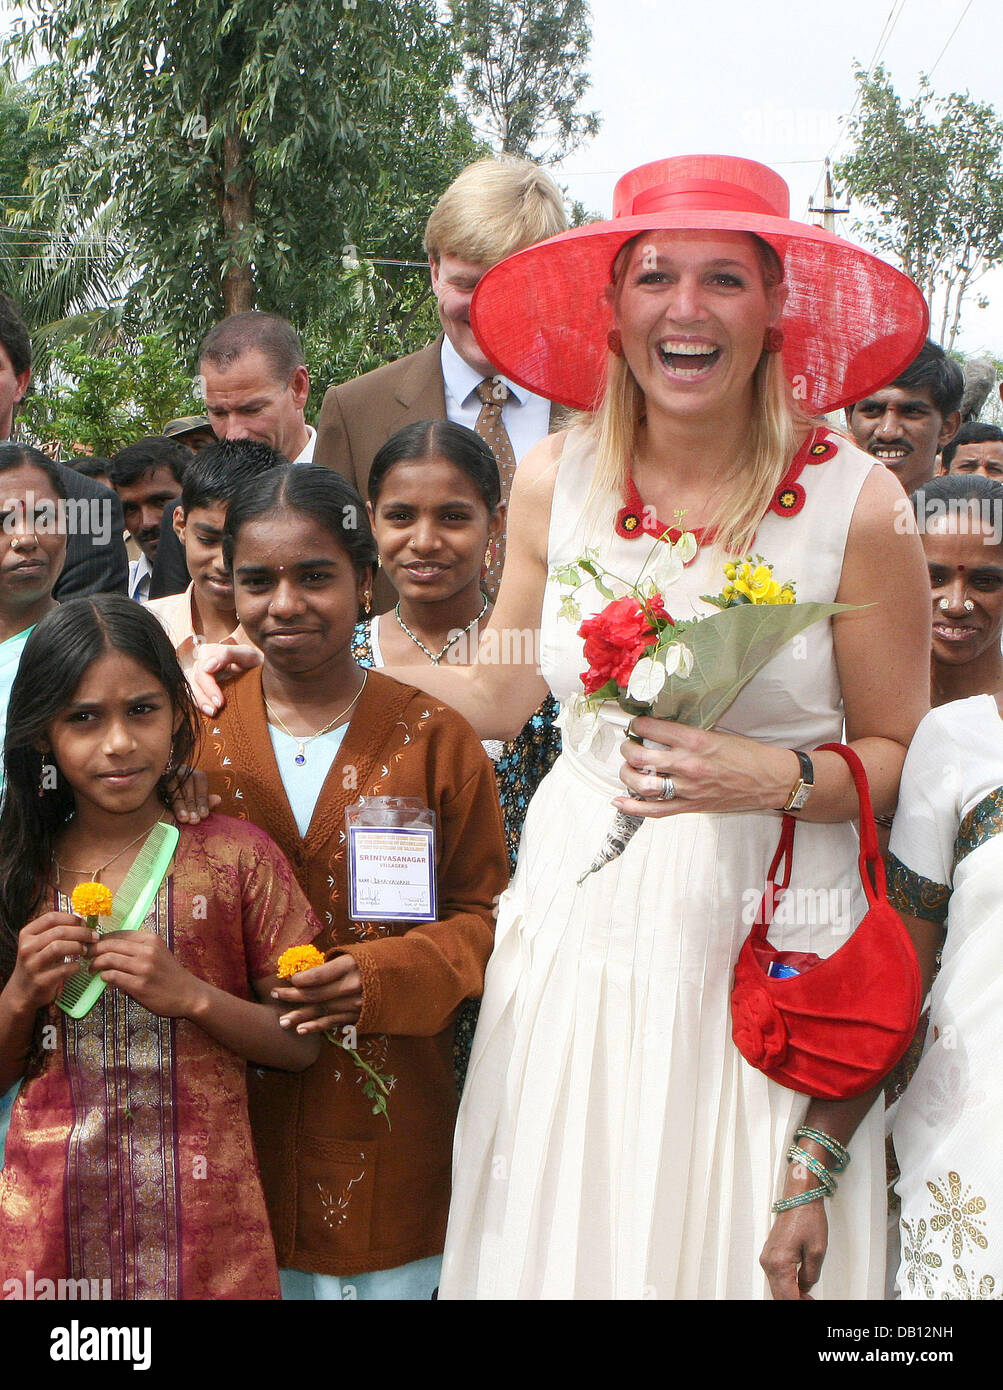 La princesse maxima des Pays-Bas (R) avec des sourires des enfants dans Srinivasnagar près de Bangalore, Inde, le 26 octobre 2007. La famille royale néerlandaise est sur trois jours de visite d'Etat en Inde, le troisième jour d'aujourd'hui la famille se sont informés sur les projets d'irrigation et de micro crédits. Photo : Albert Nieboer (Pays-Bas) Banque D'Images